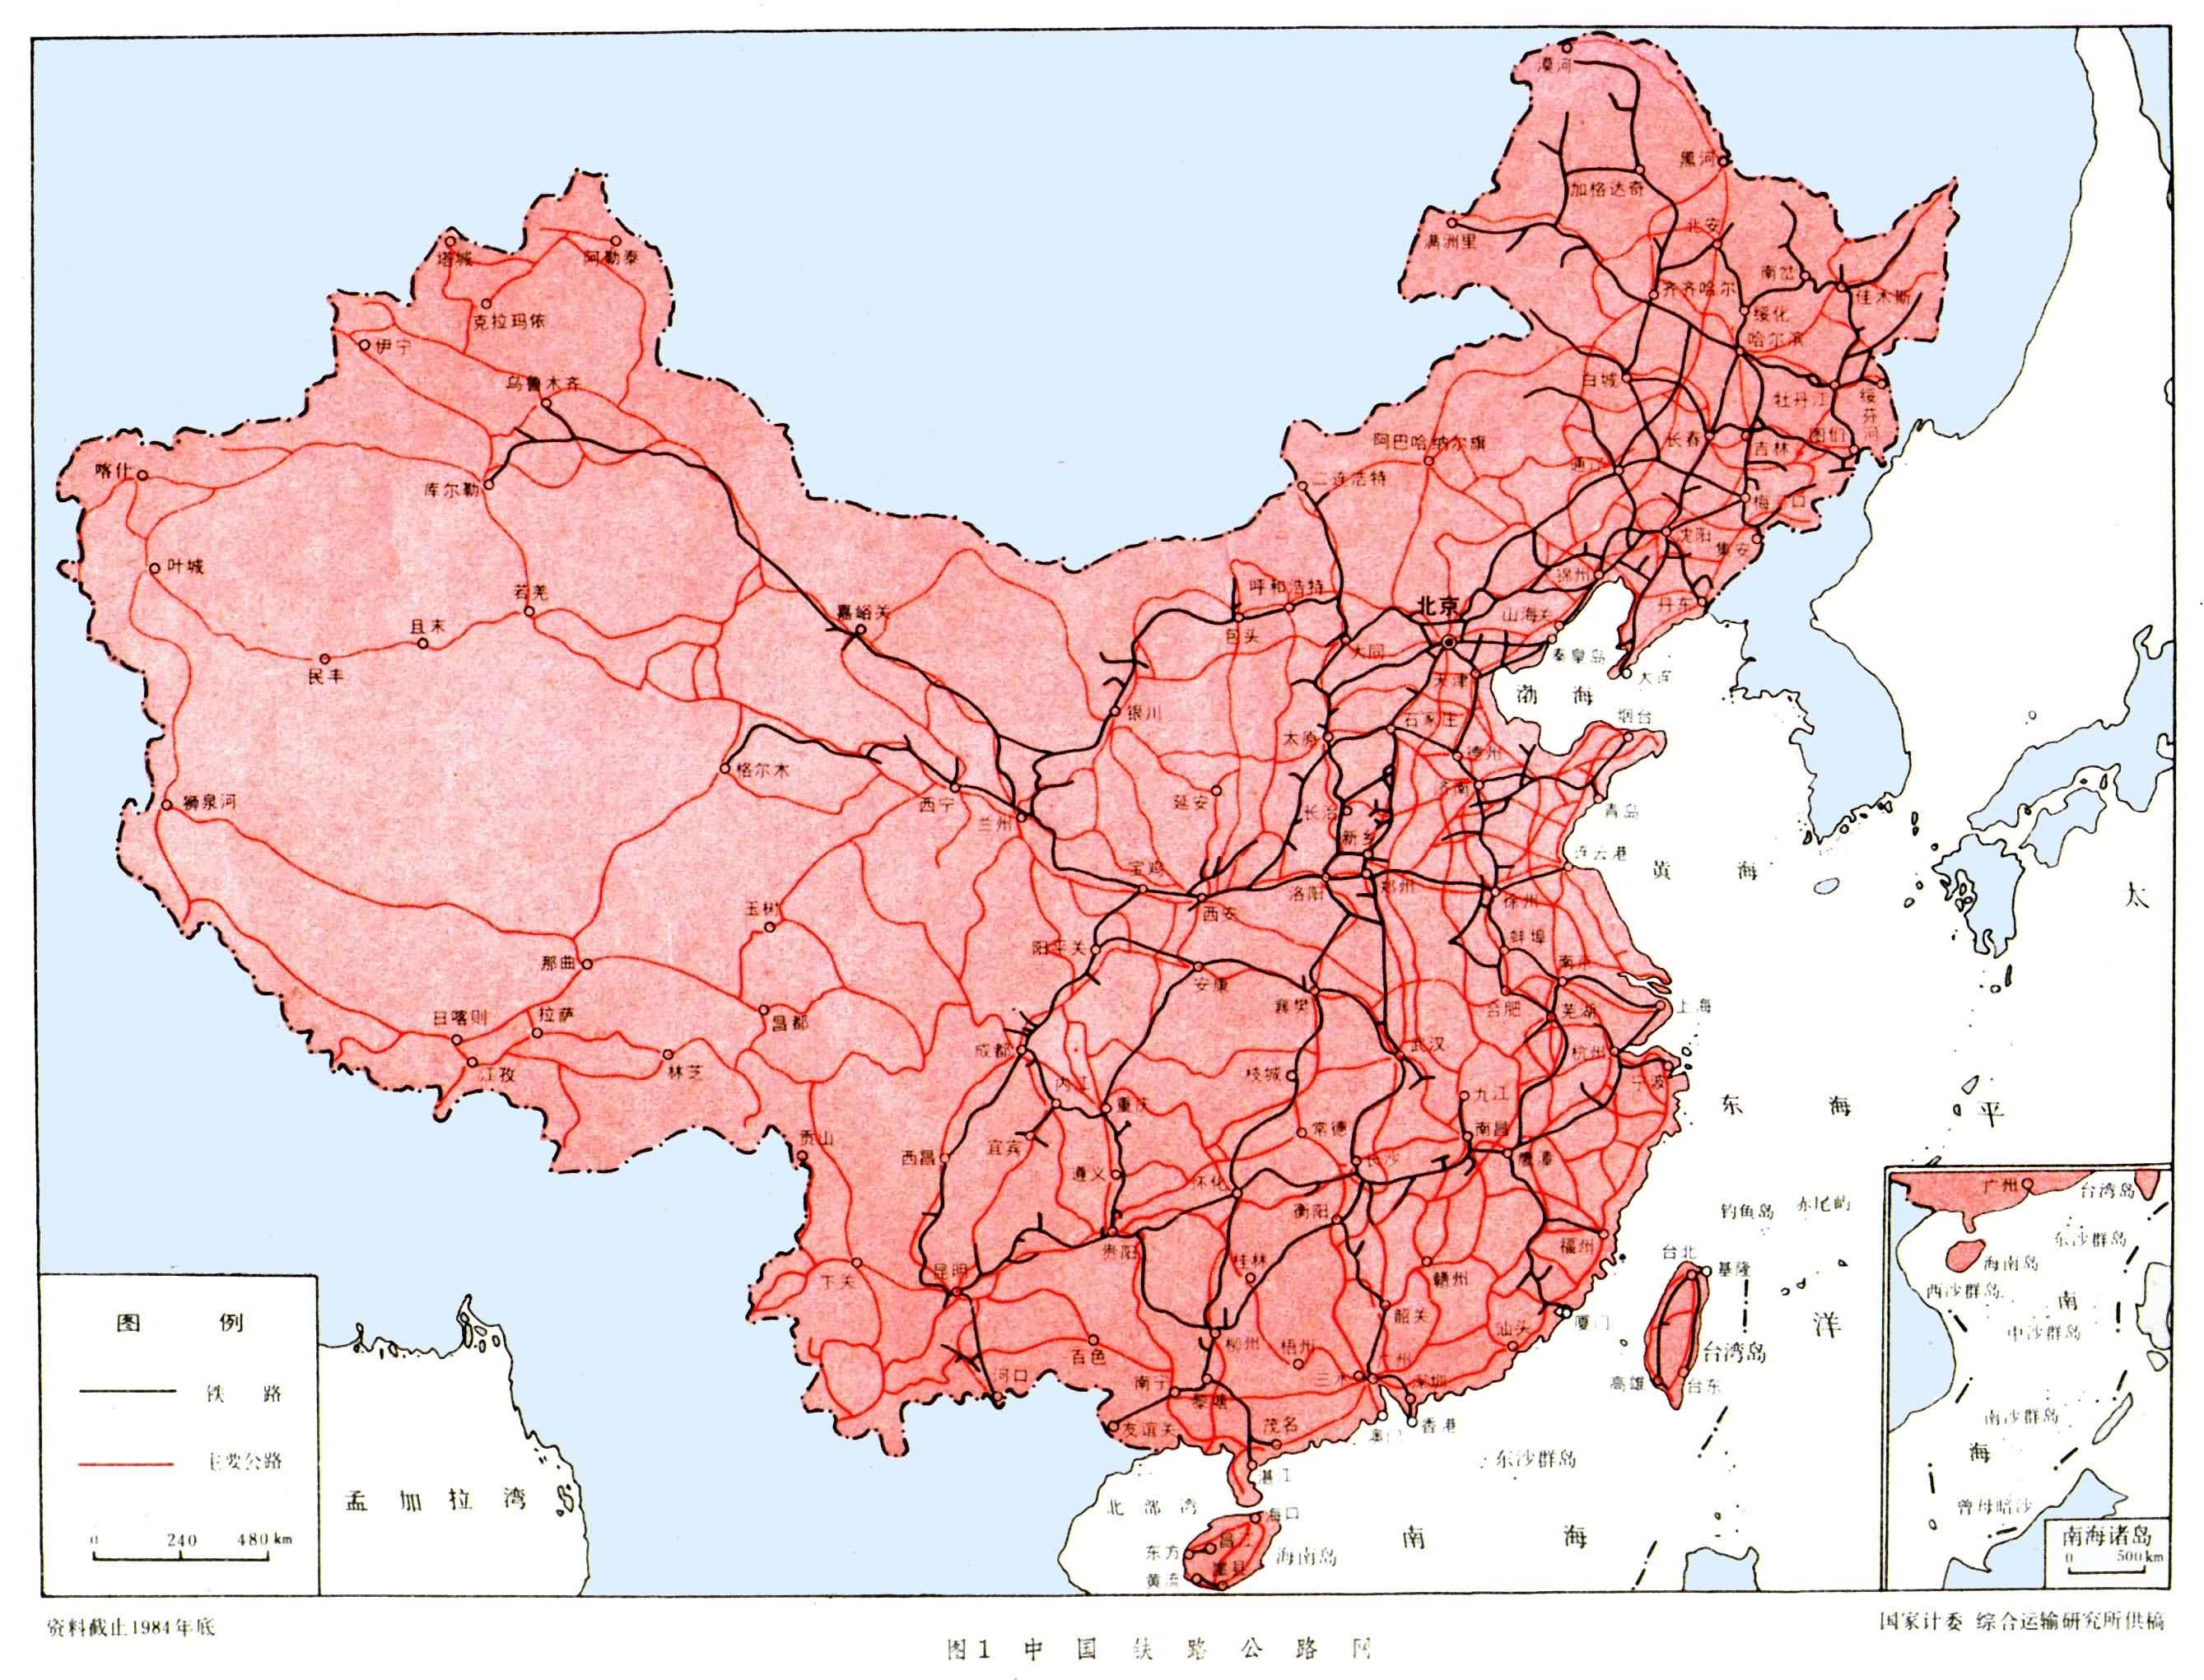 1949年以后,中国铁路交通得到蓬勃发展,其主要特点是:①铁路线向西北